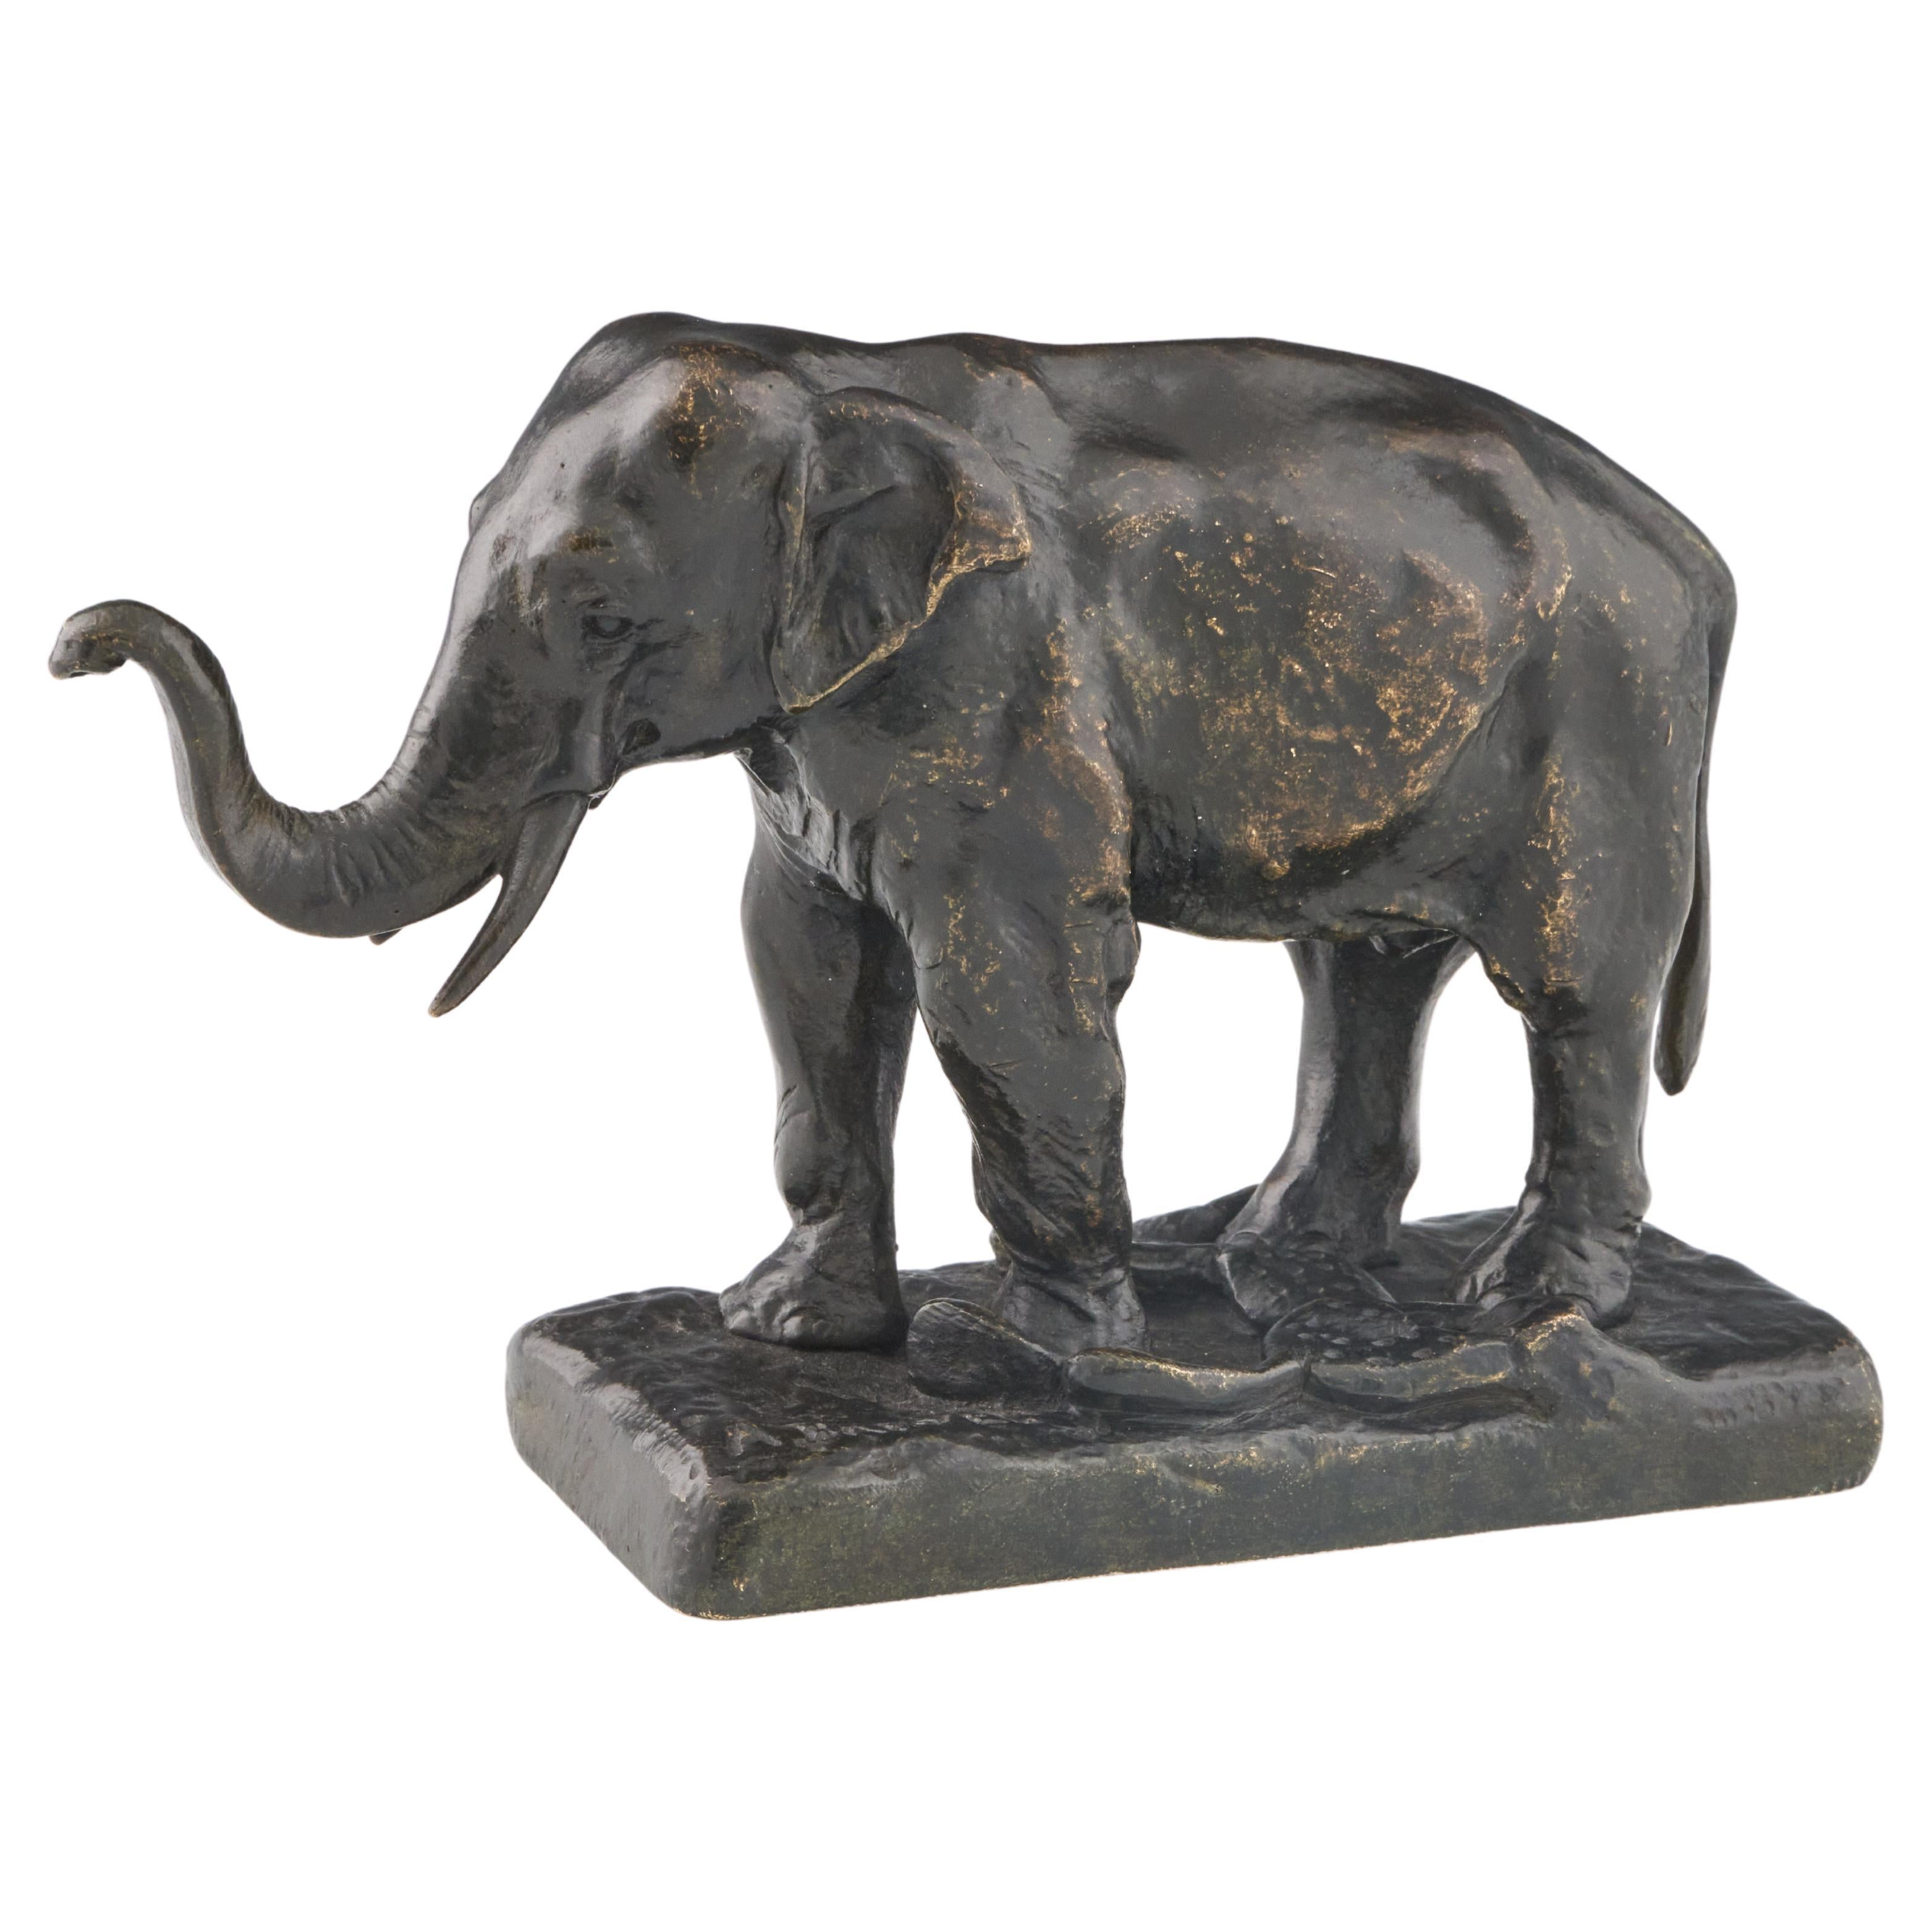 Asiatischer Elefant", eine Bronzeskulptur von Alfred Barye aus der Mitte des 19. Jahrhunderts, um 1860